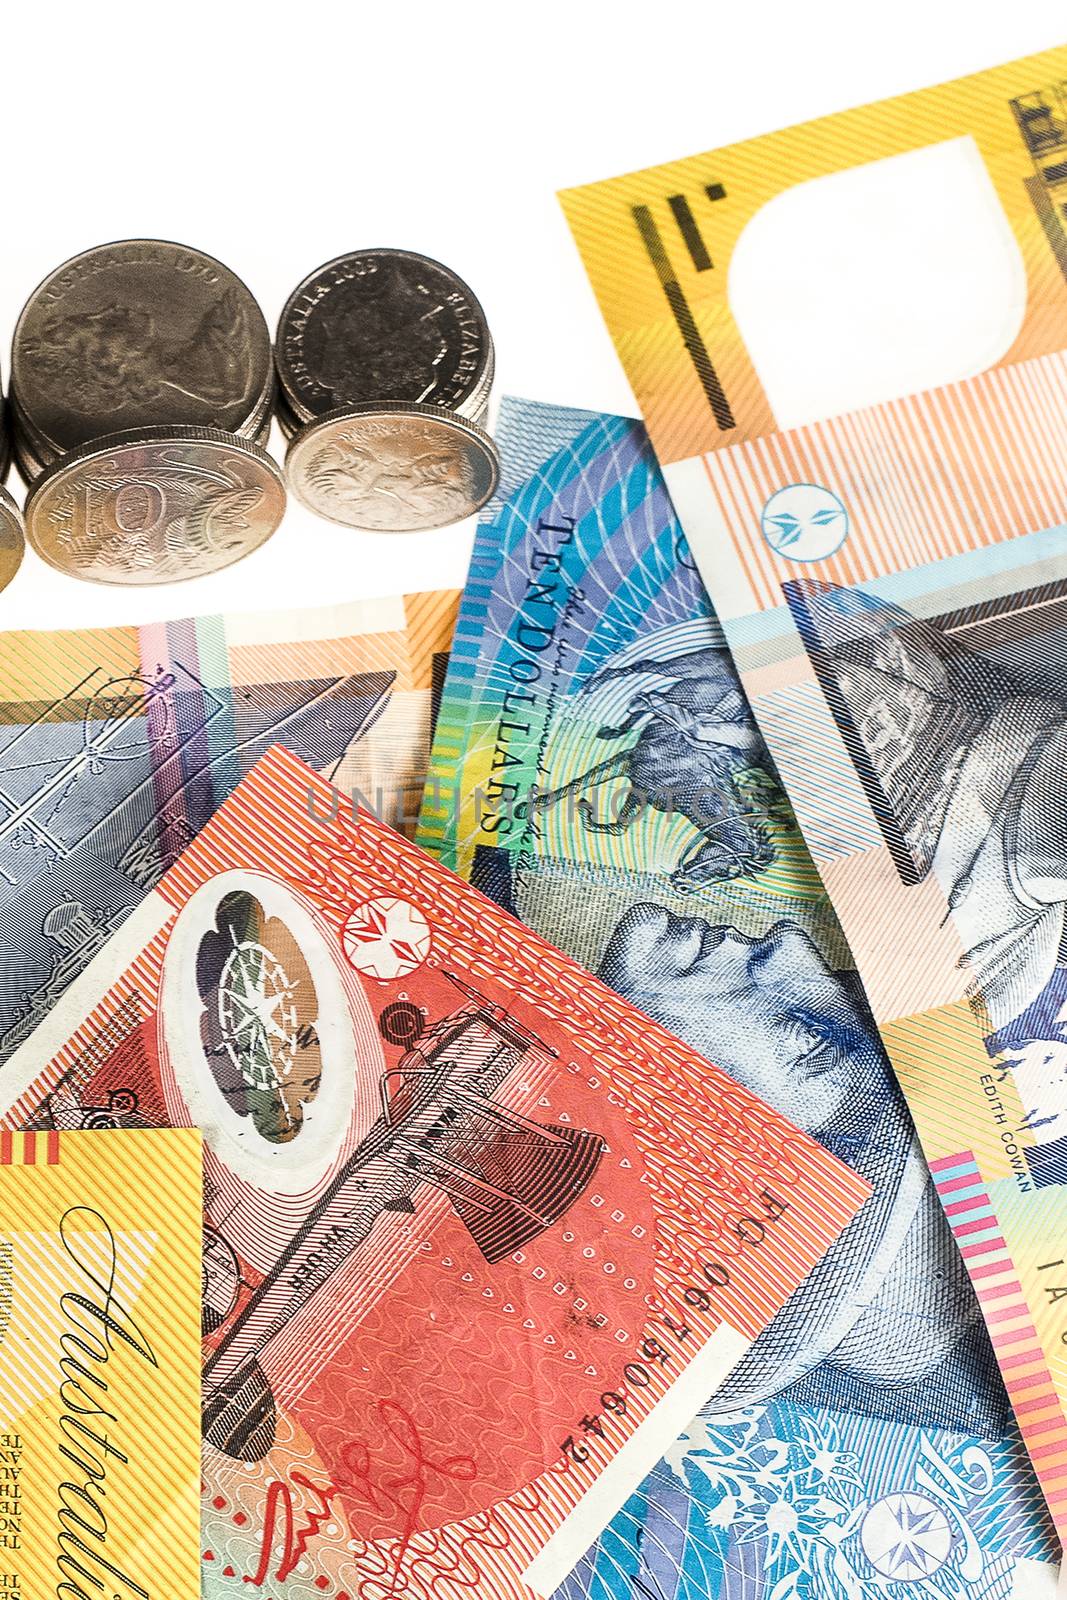 Australian Currency by artistrobd